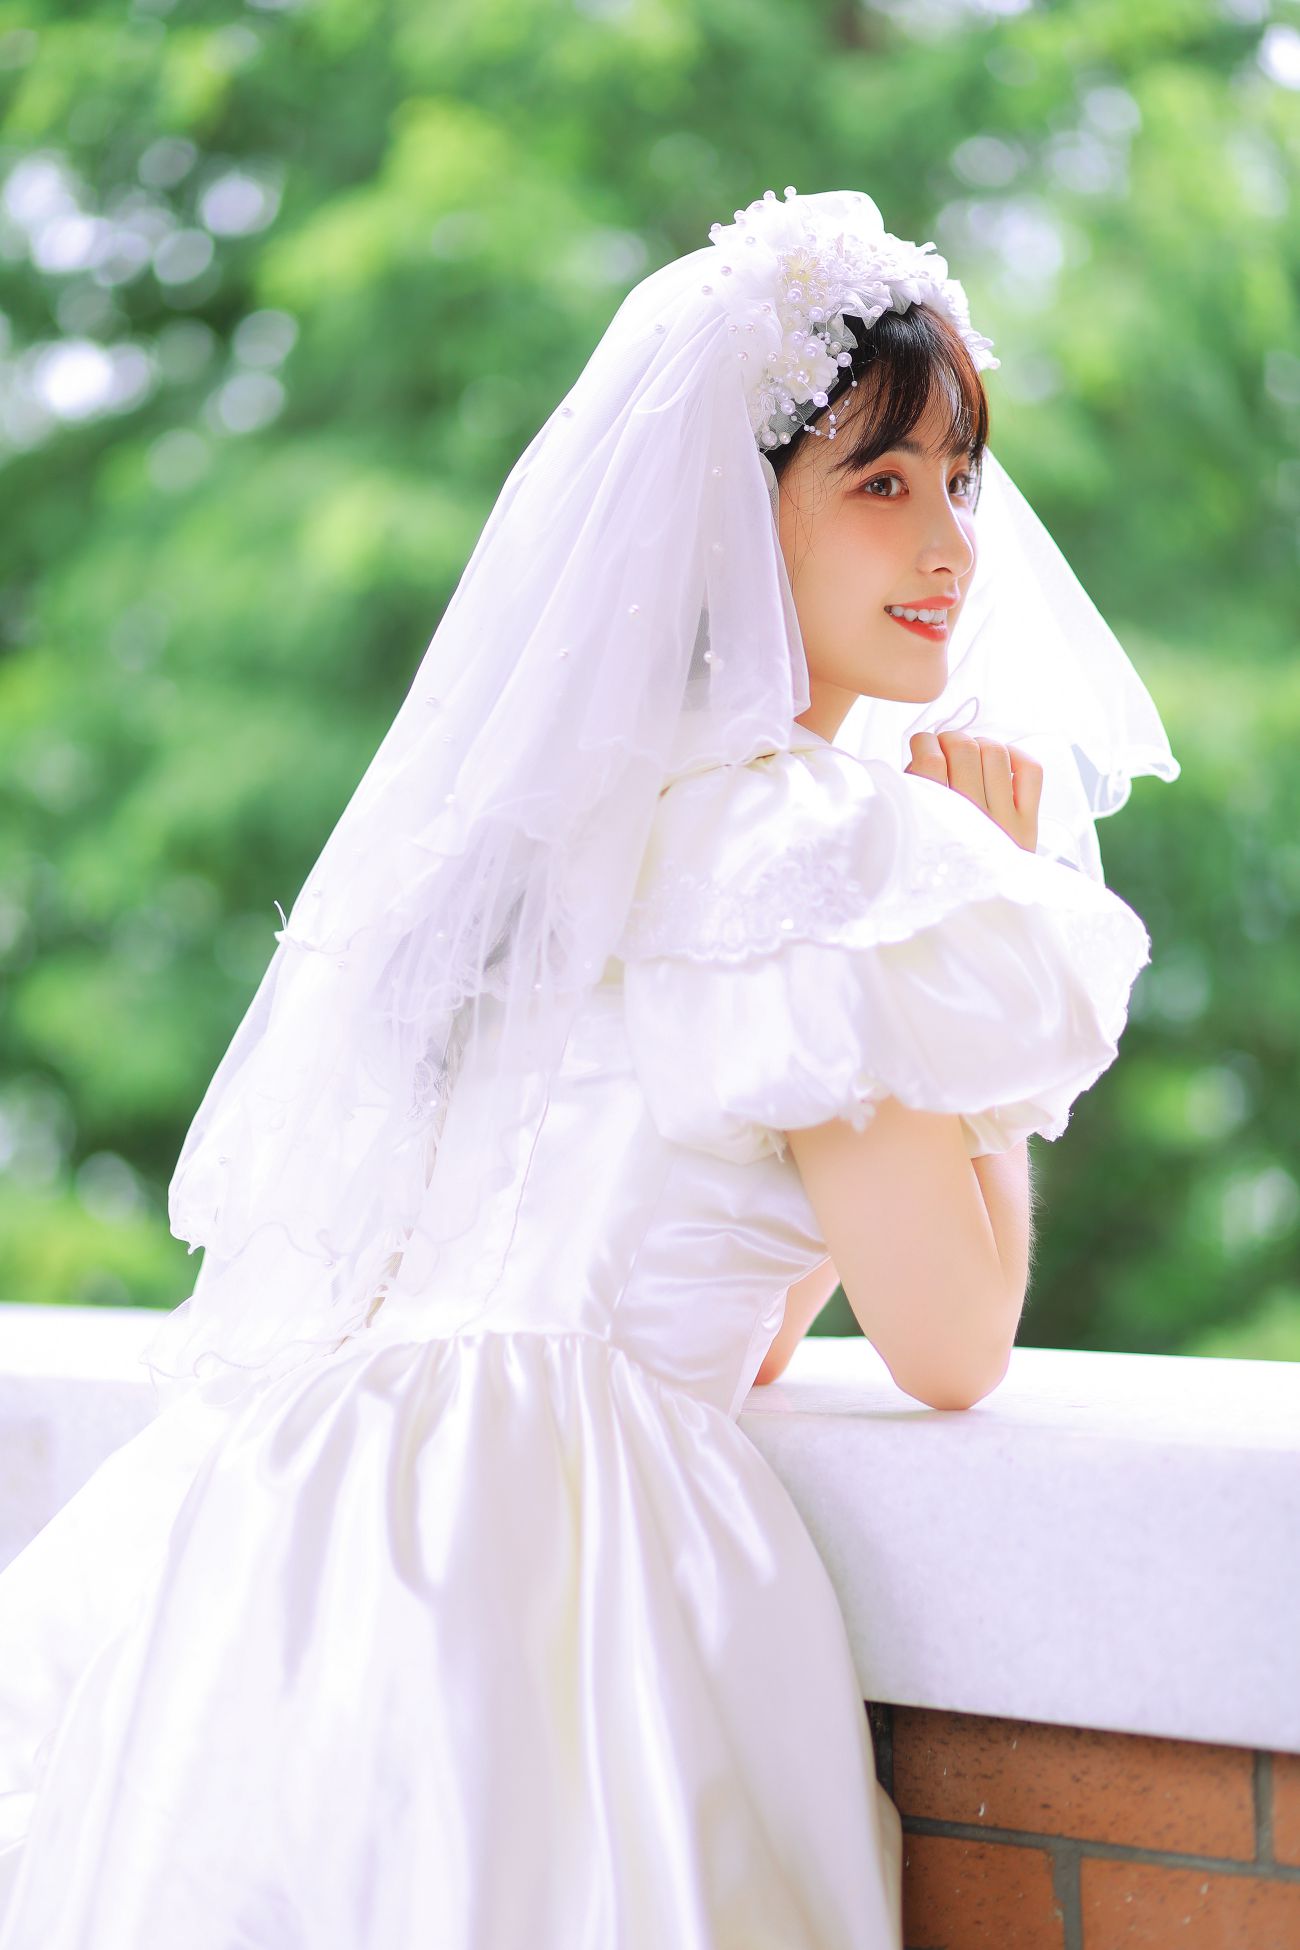 YITUYU艺图语模特唯美写真2021.11.08期新娘的嫁纱我是金儿呀 (9)